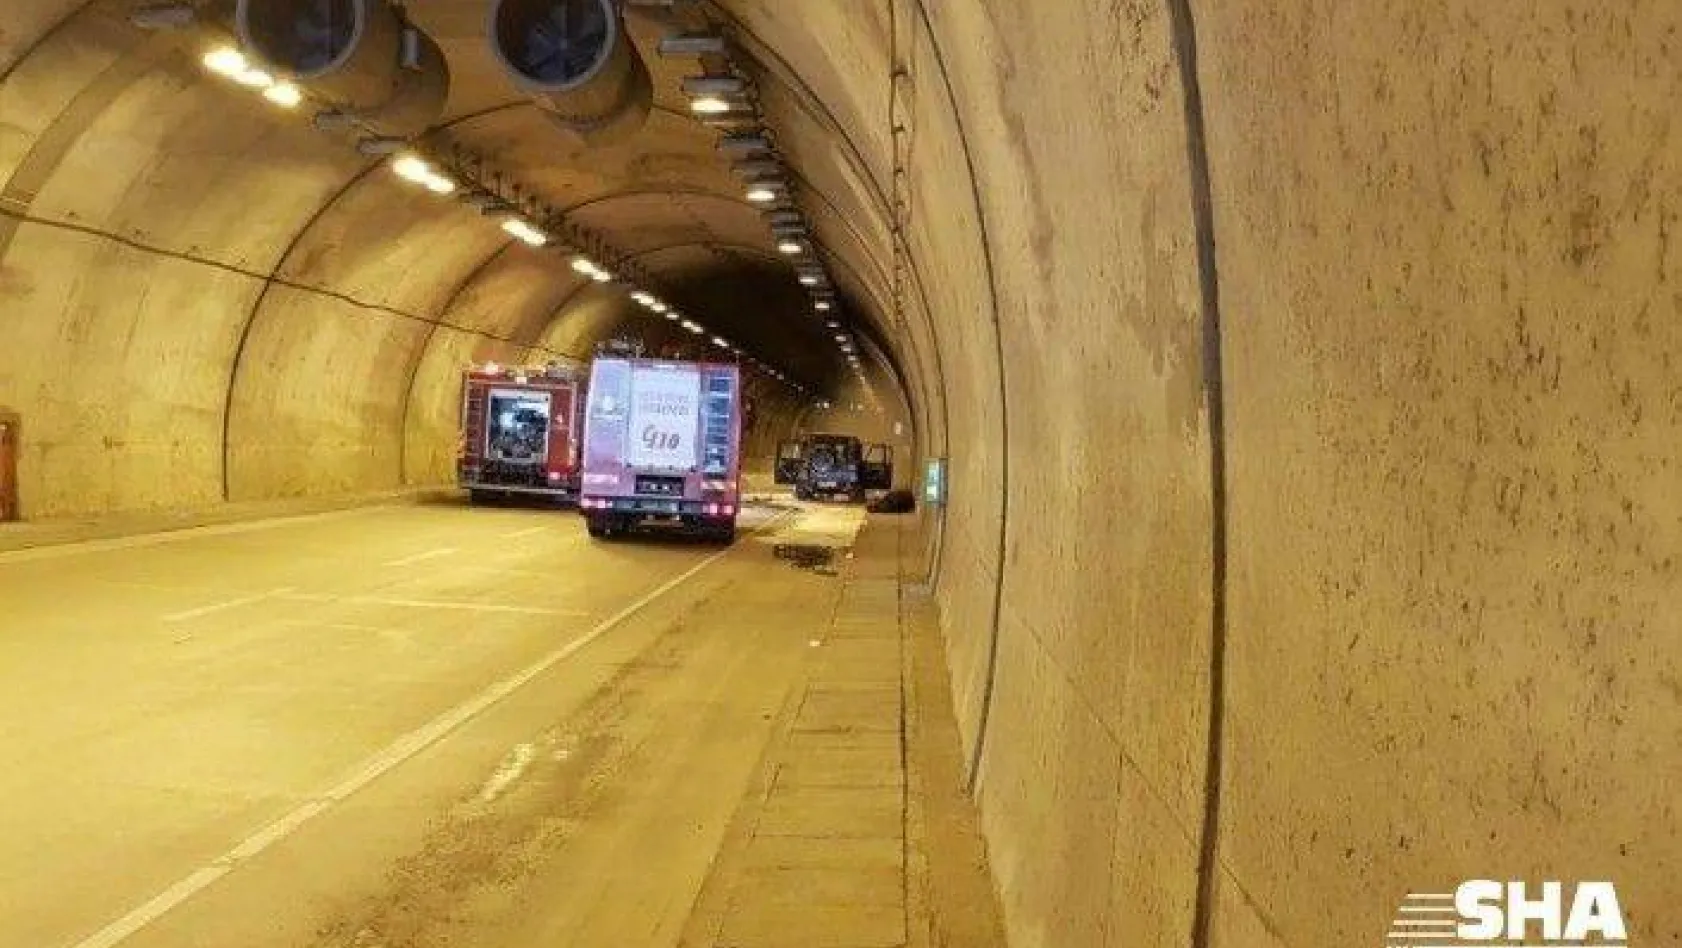 Sarıyer Tüneli'nde bir araç henüz bilinmeyen nedenle alev aldı. Tünel girişi trafiğe kapatılırken itfaiye ekipleri araca müdahale ediyor.